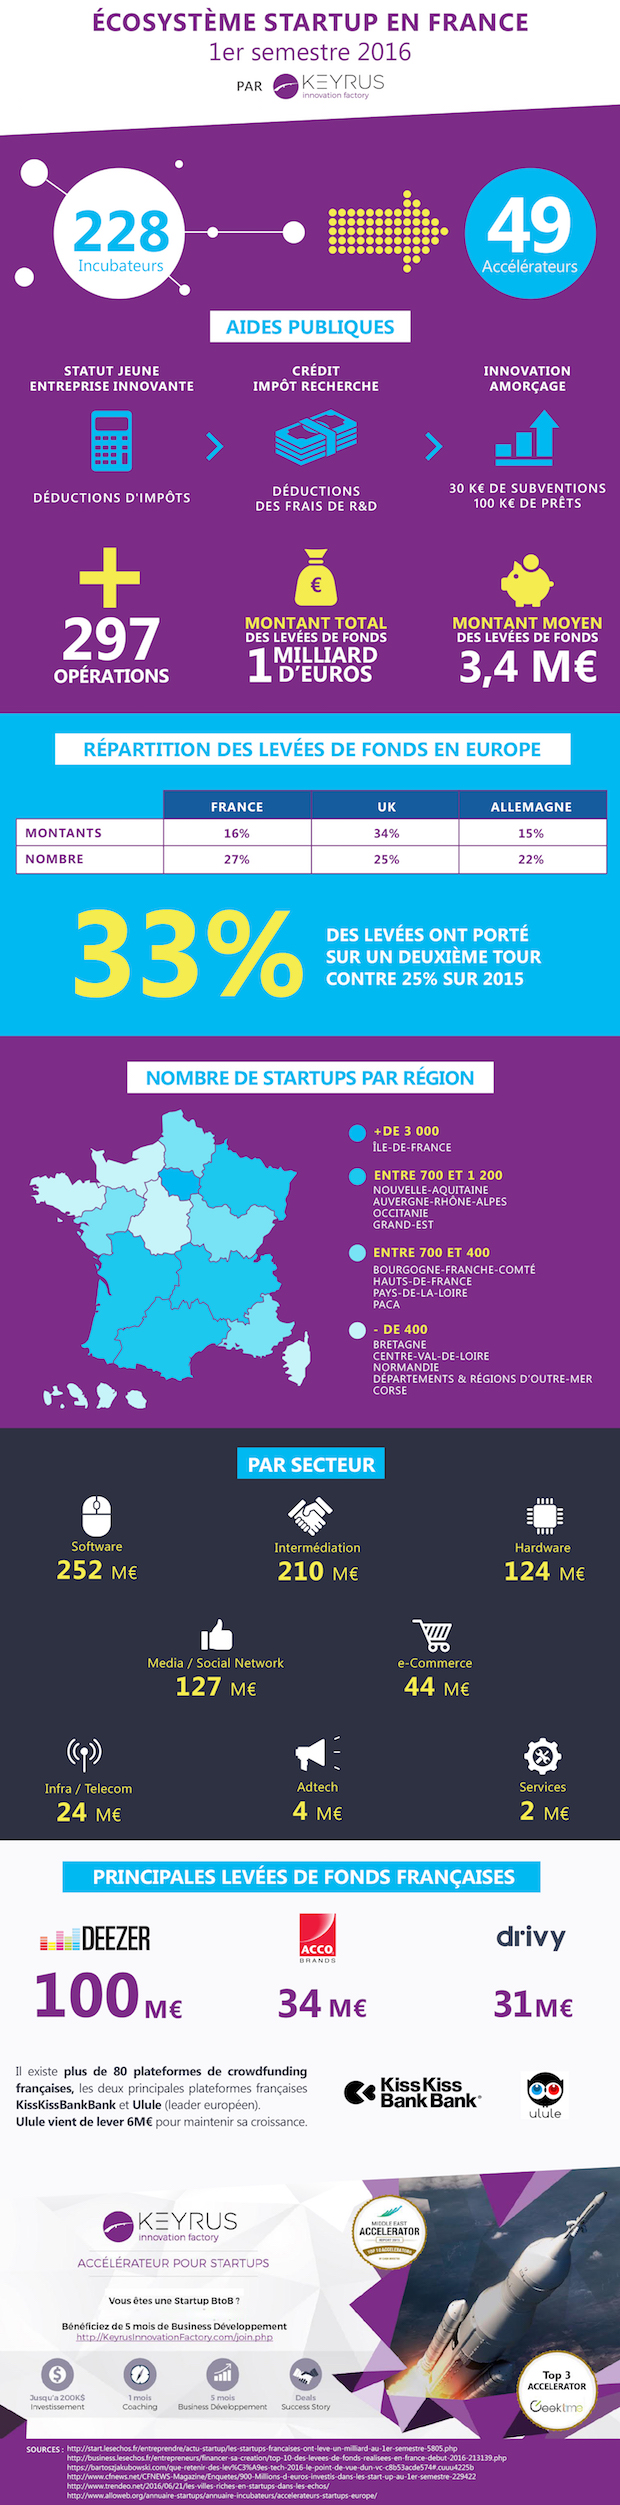 Infographie KIF - L'écosystème startup en France 1er semestre - copie